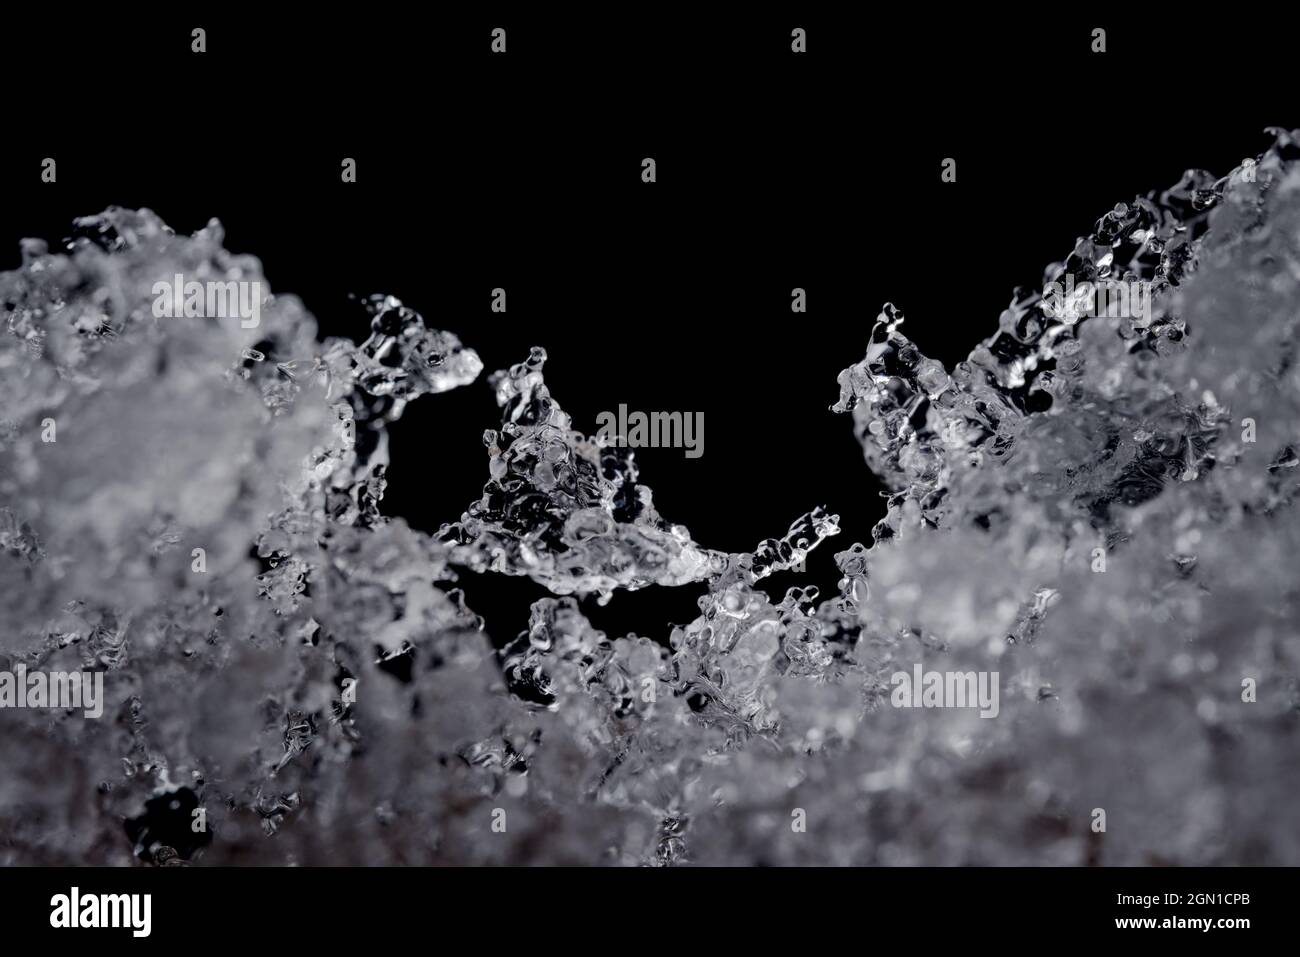 Komplizierte Details von schmelzenden Wasserpartikeln. Konzentrieren Sie sich auf einen seltsam geformten Eiskristall in der Mitte, aber auf einen schlichten schwarzen Hintergrund mit Kopierbereich oben. Stockfoto